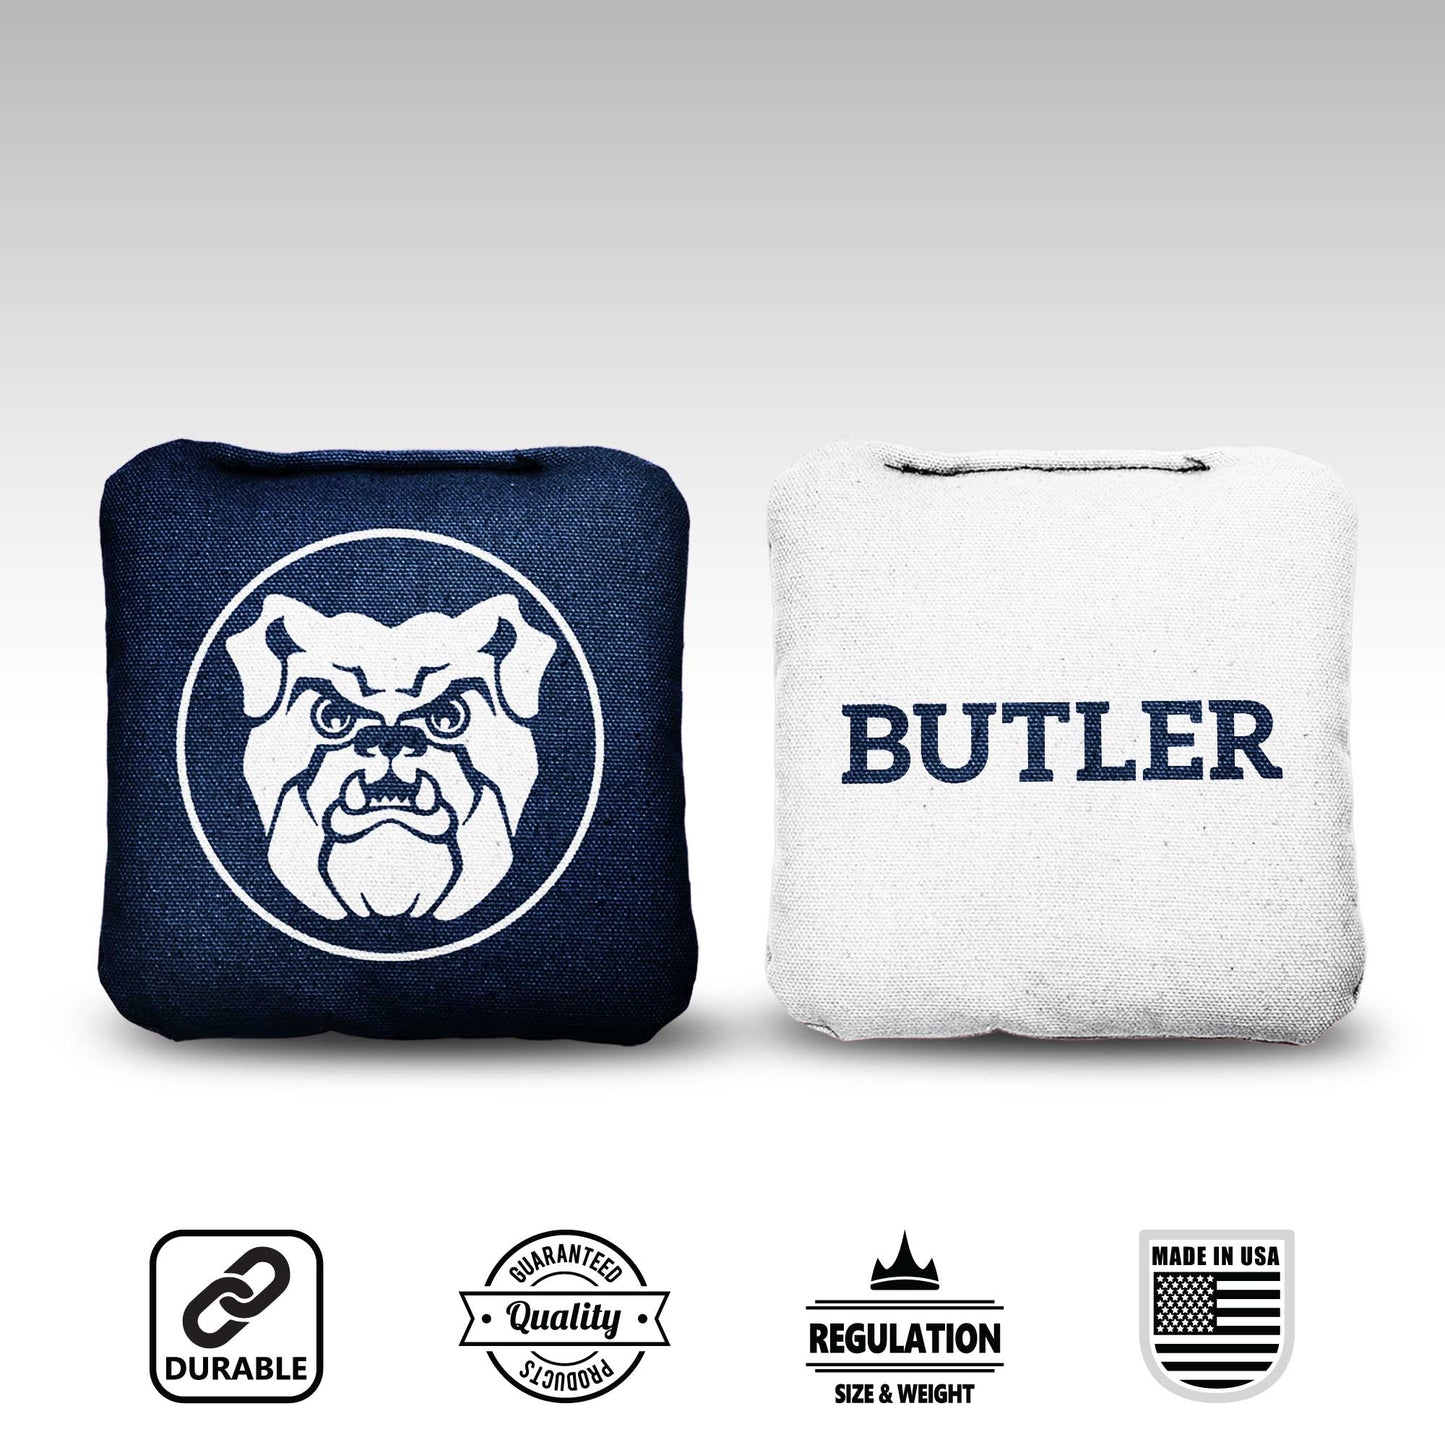 Butler University Cornhole Bags - 8 Cornhole Bags